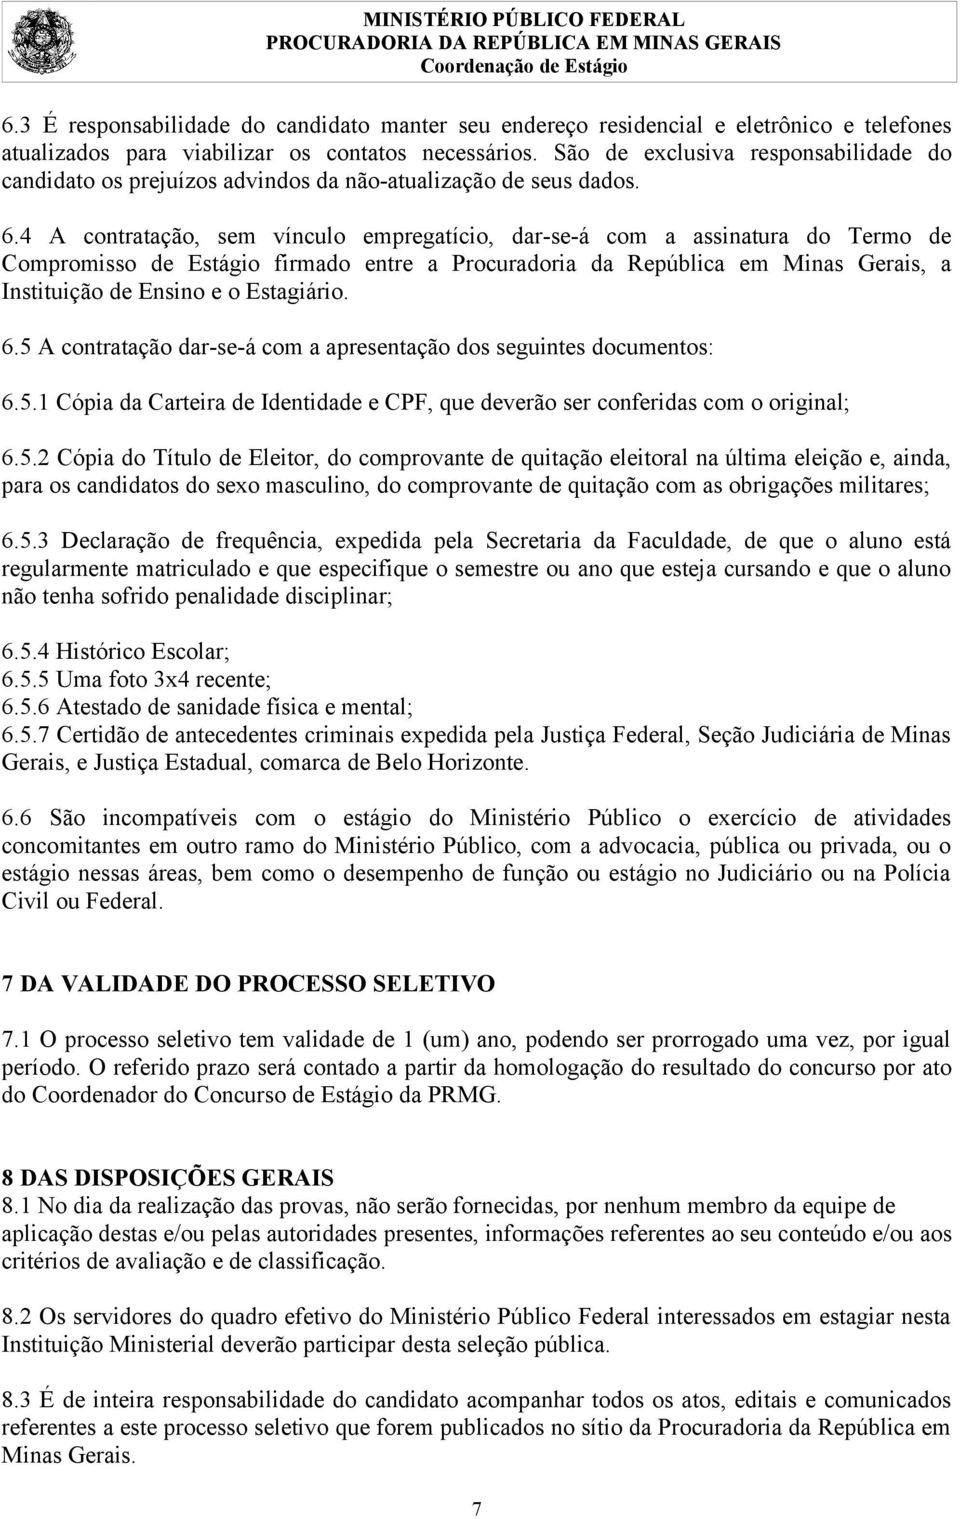 4 A contratação, sem vínculo empregatício, dar-se-á com a assinatura do Termo de Compromisso de Estágio firmado entre a Procuradoria da República em Minas Gerais, a Instituição de Ensino e o